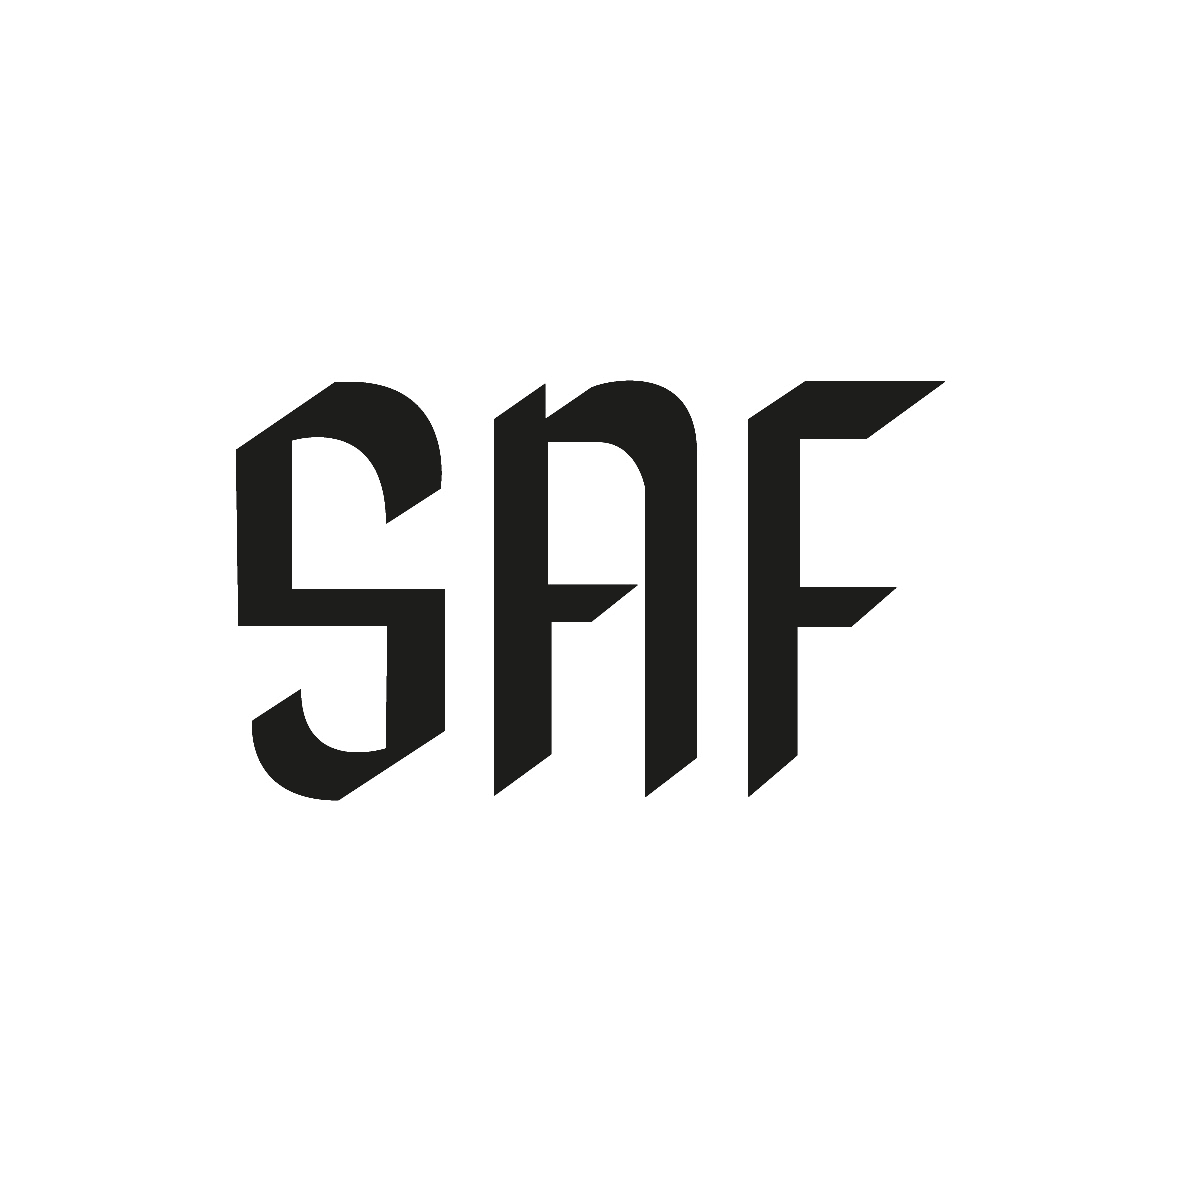 SAF_logo